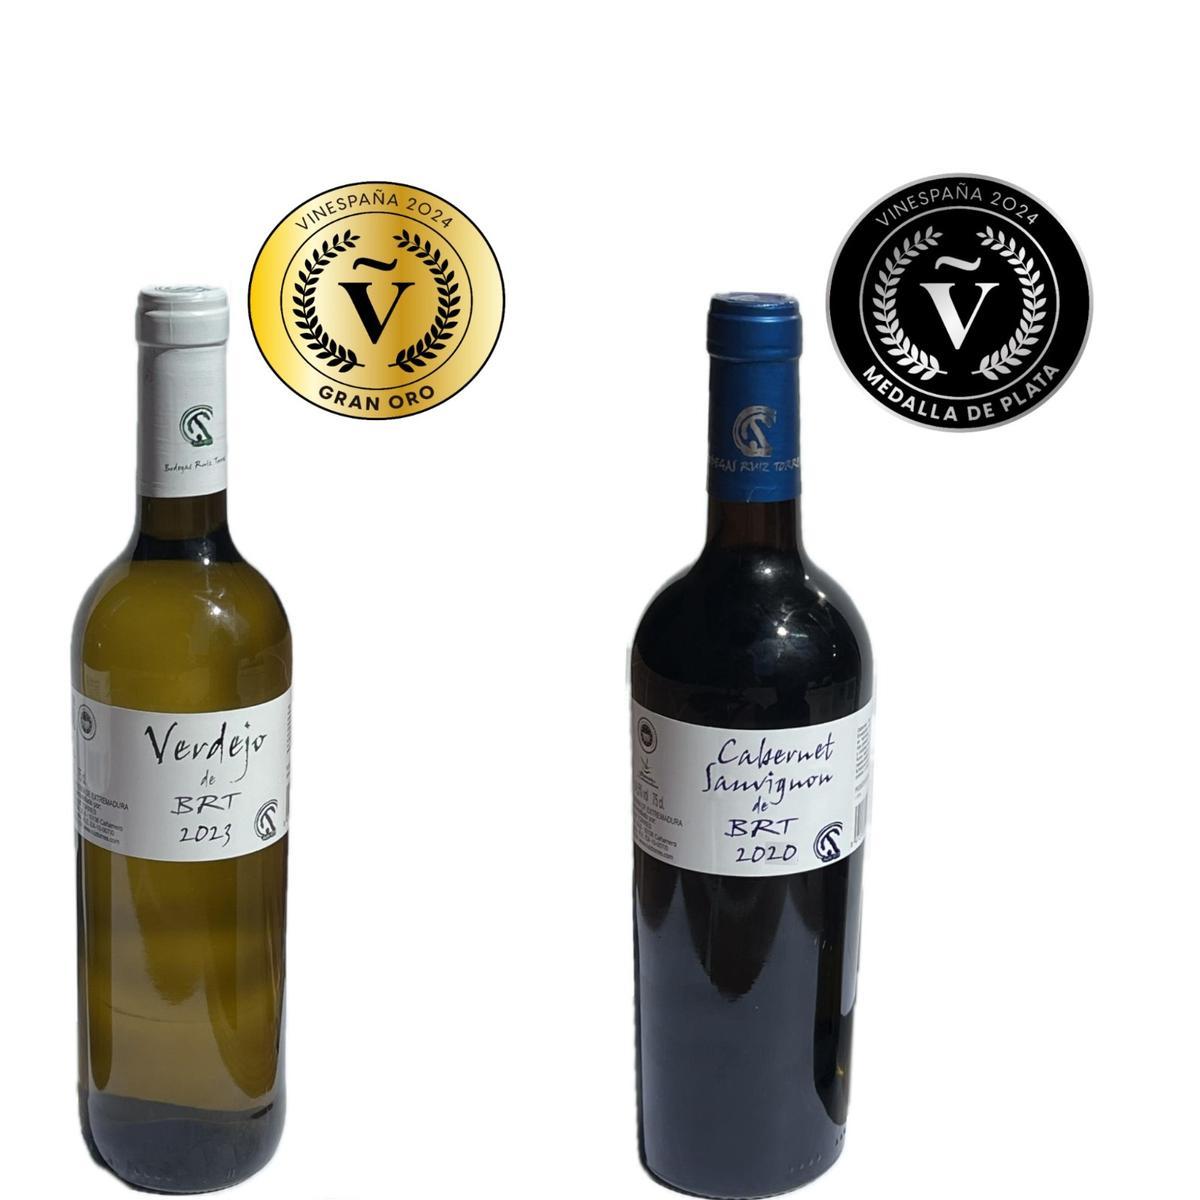 Dos de los vinos galardonados, de las Bodegas Ruiz Torres.